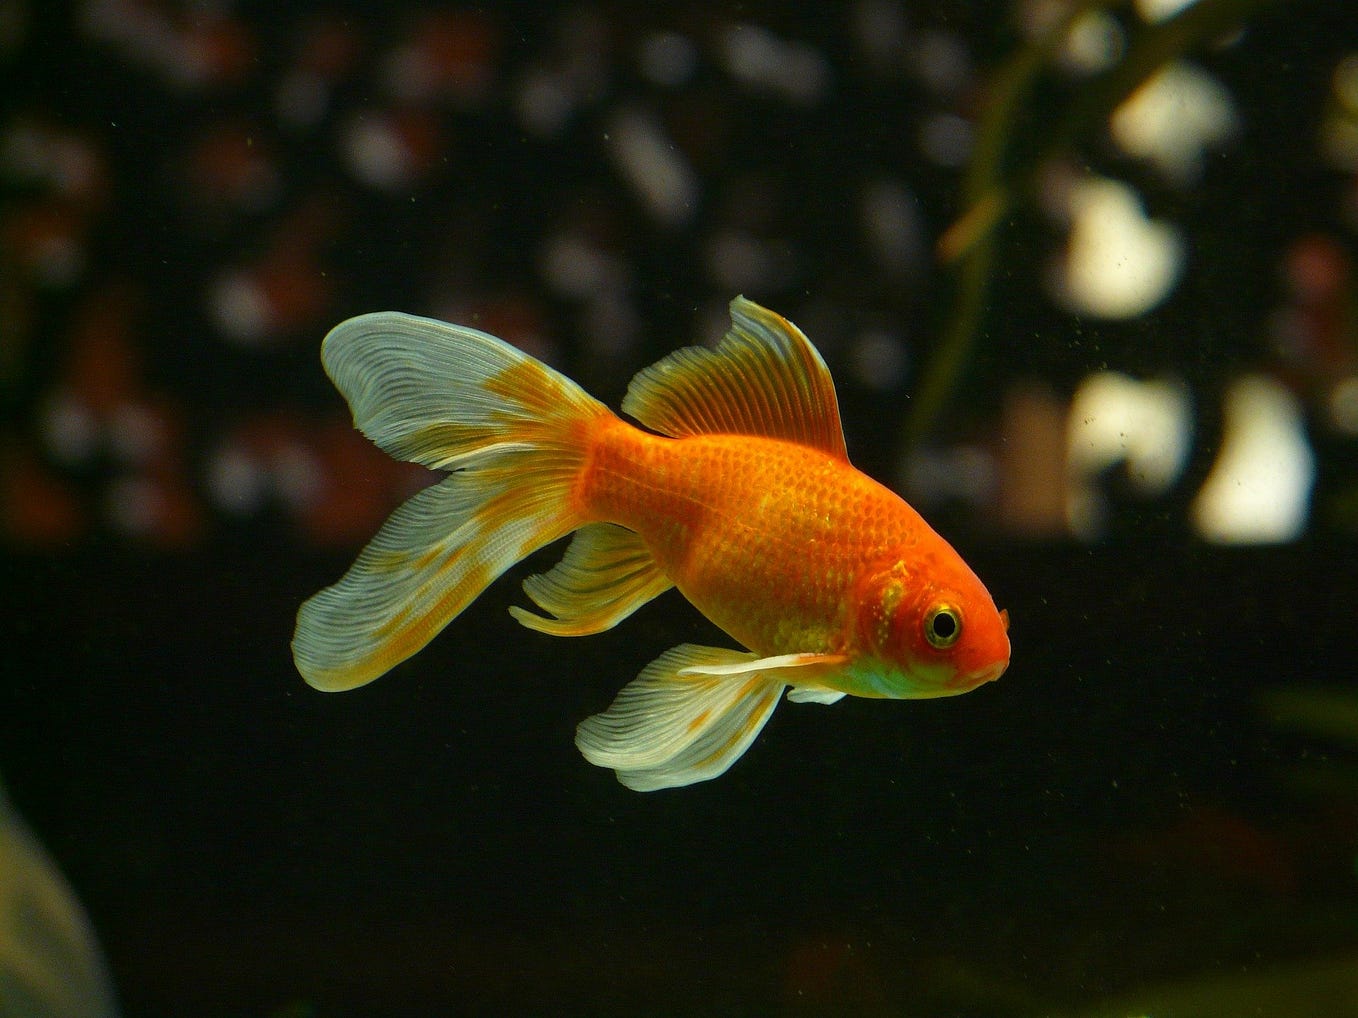 Pet goldfish in an aquarium